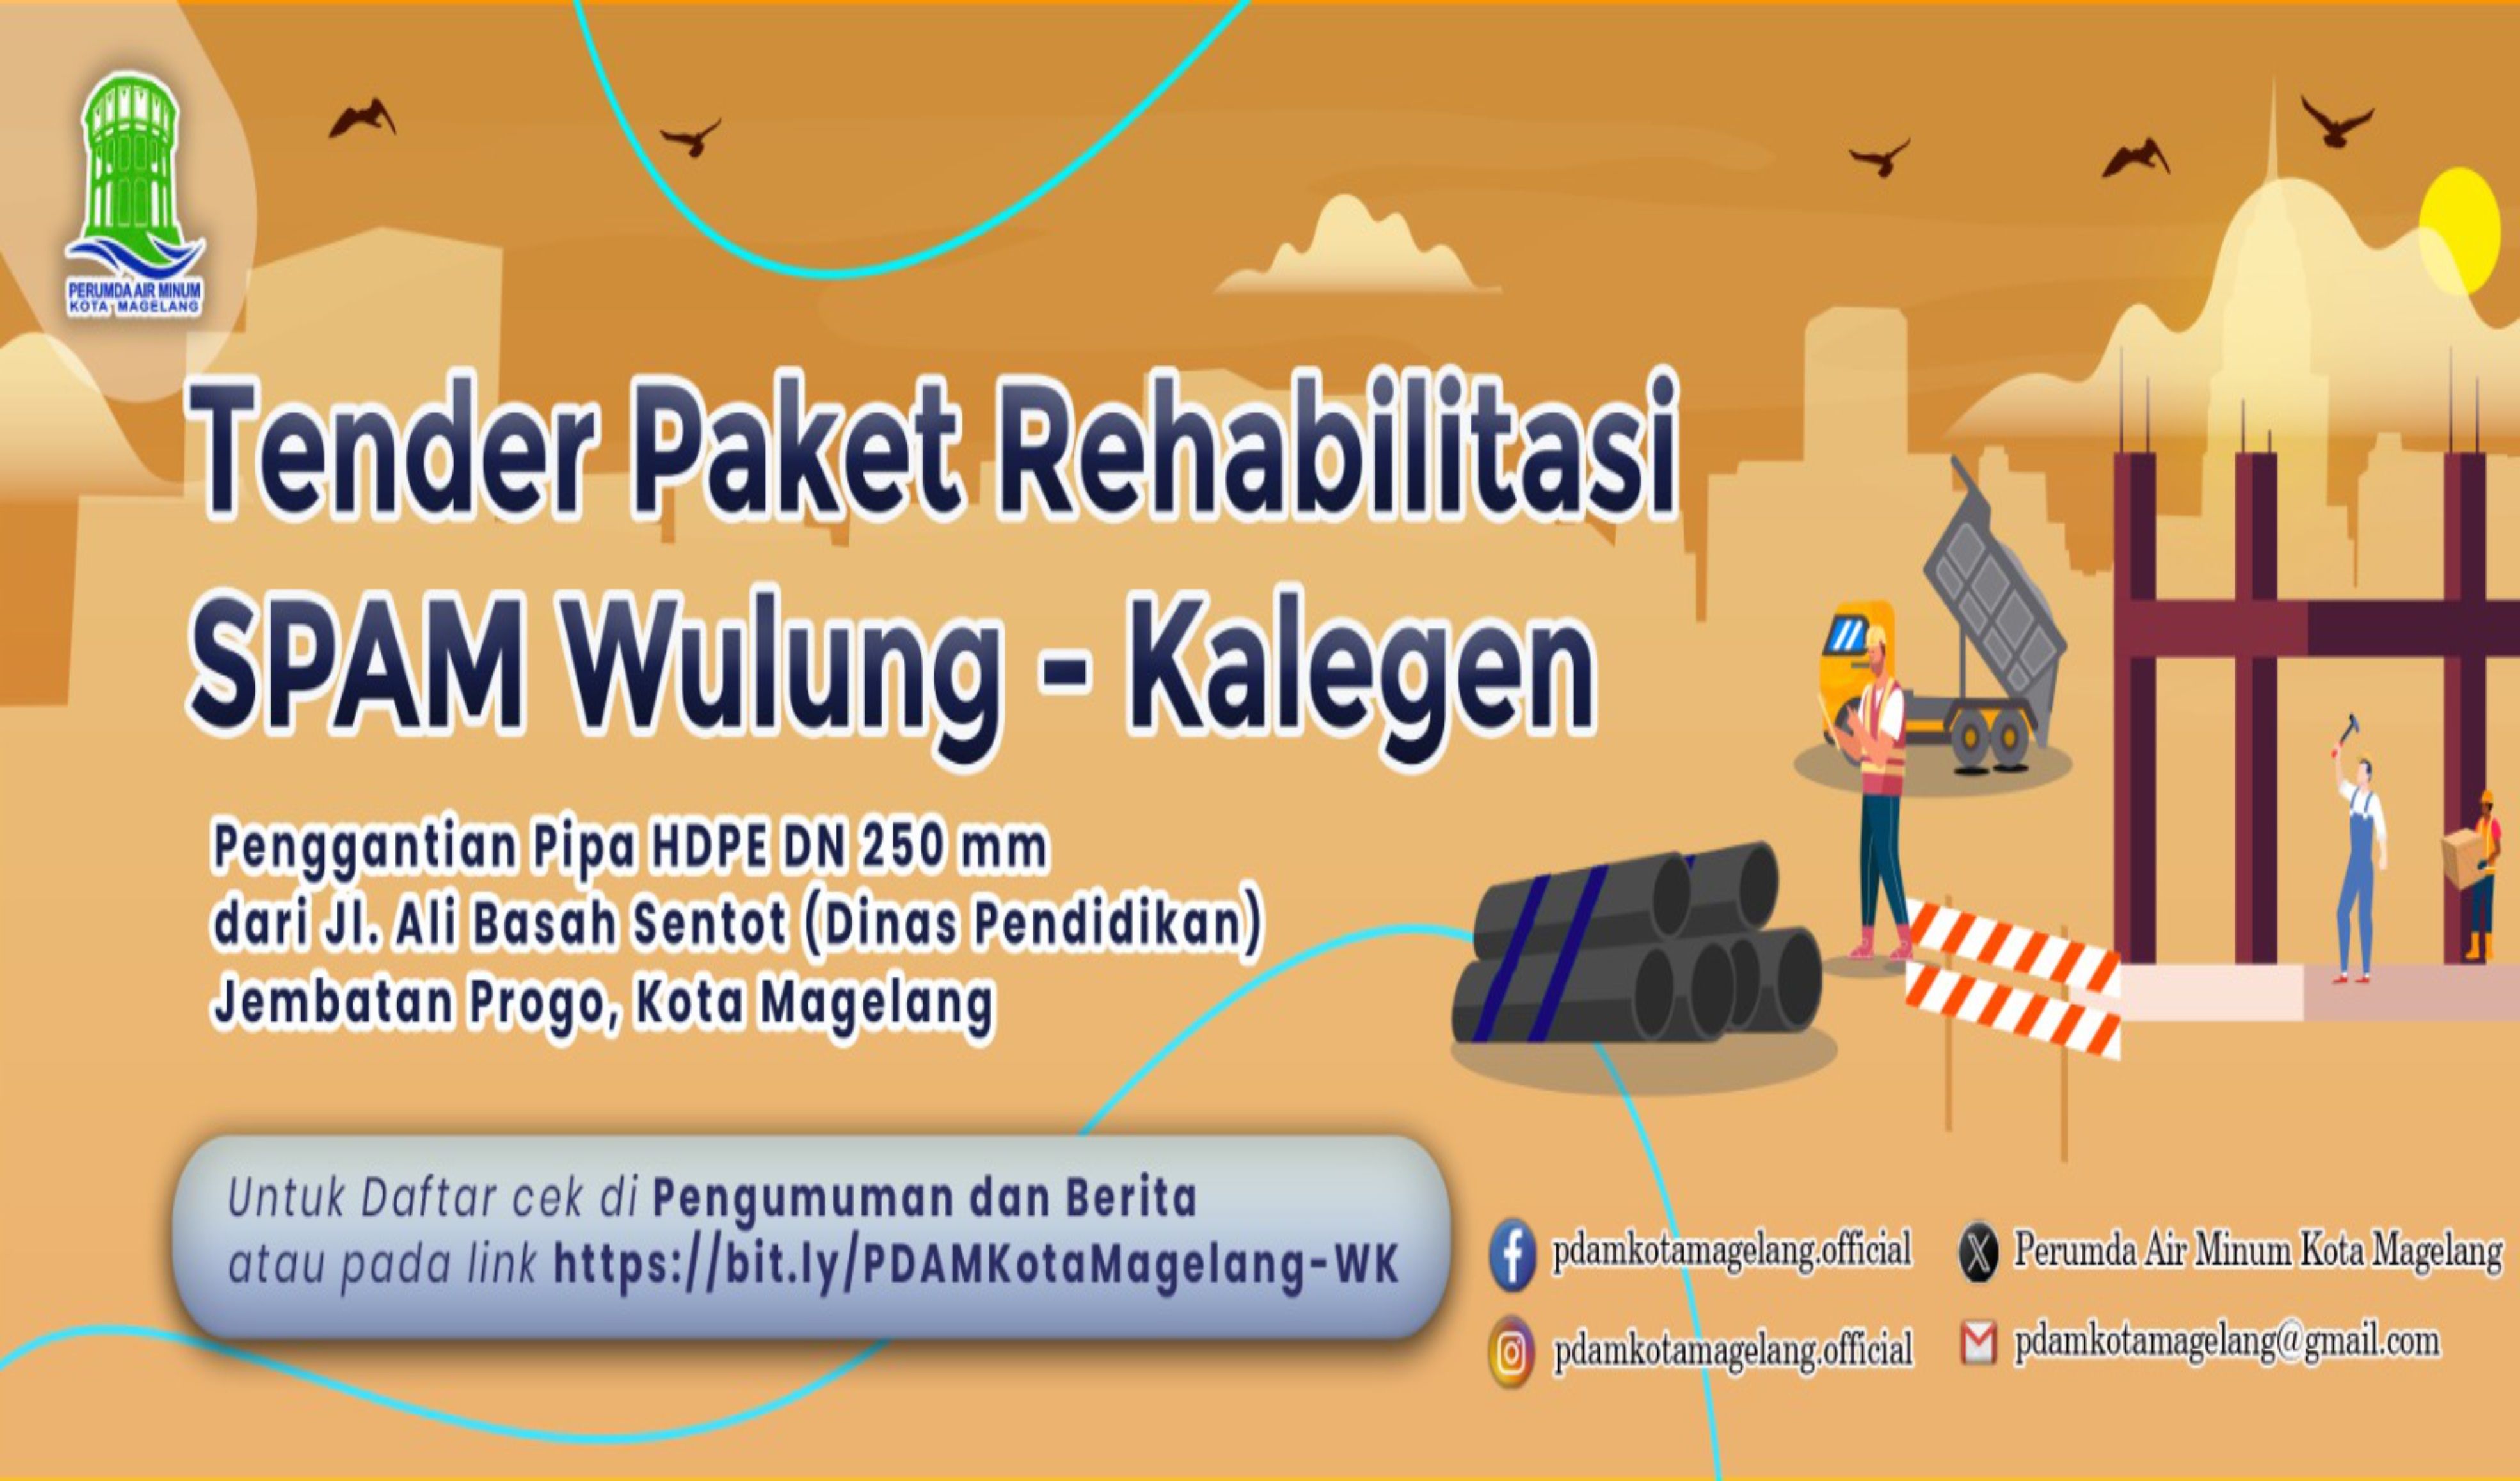 Pengumuman Tender Paket Pekerjaan Rehabilitasi SPAM Wulung Kalegen